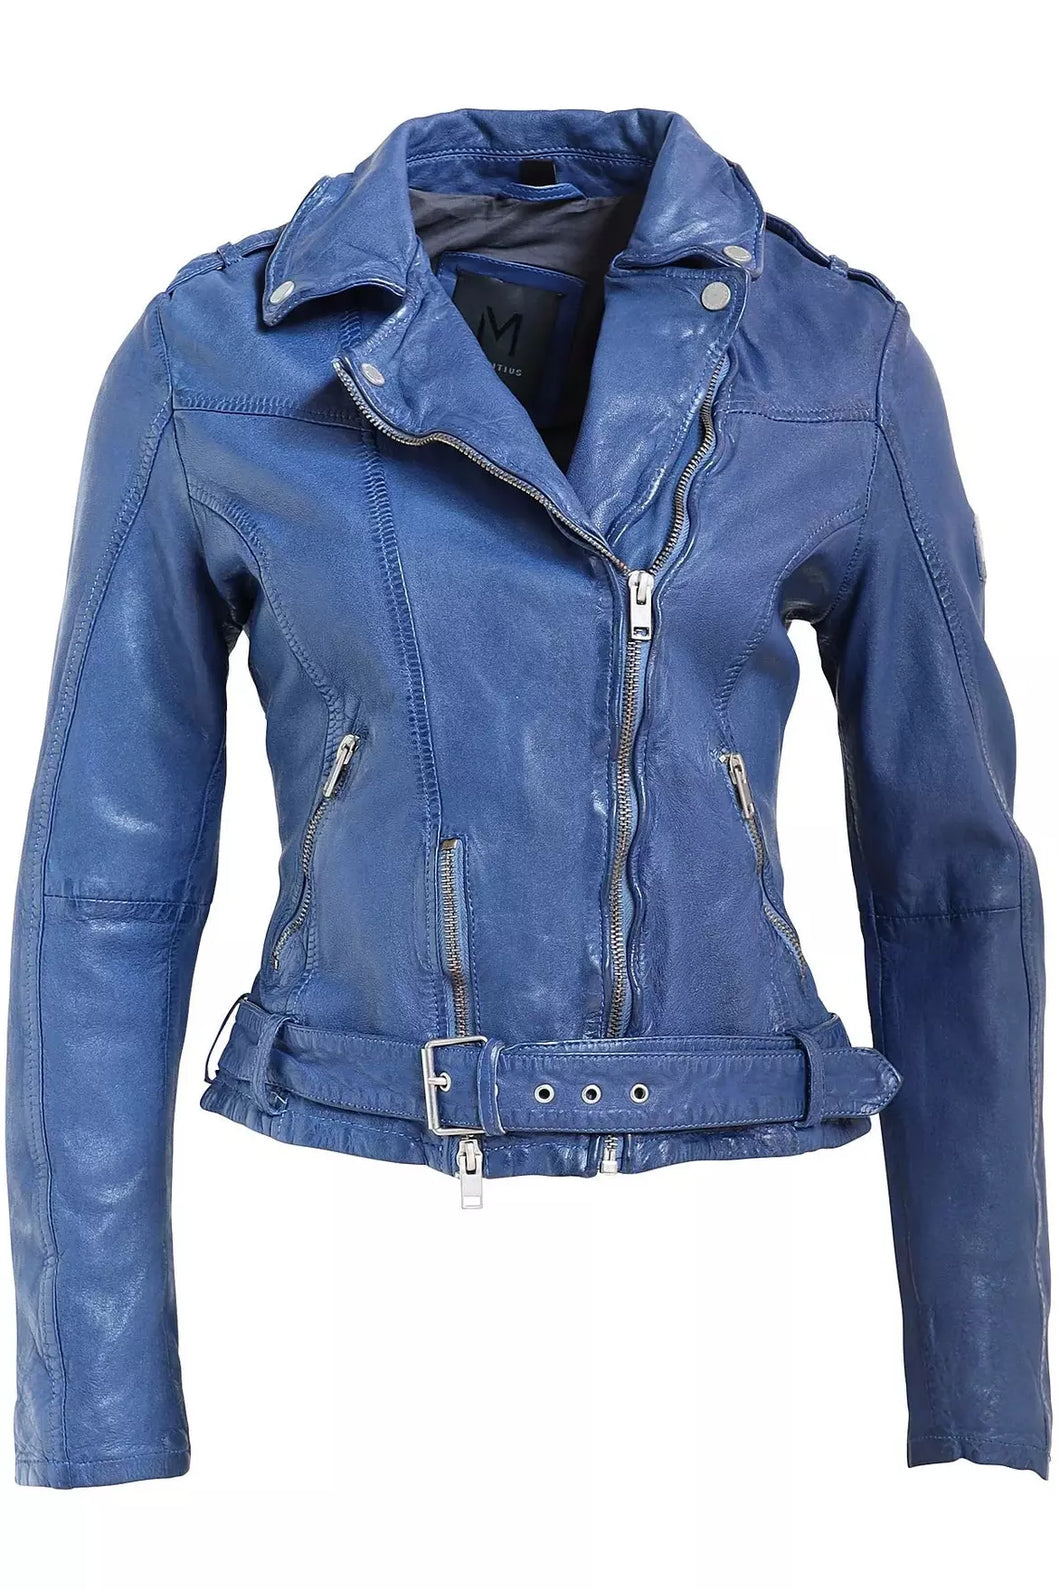 Spring Leather Jacket - WEST2WESTPORT.com